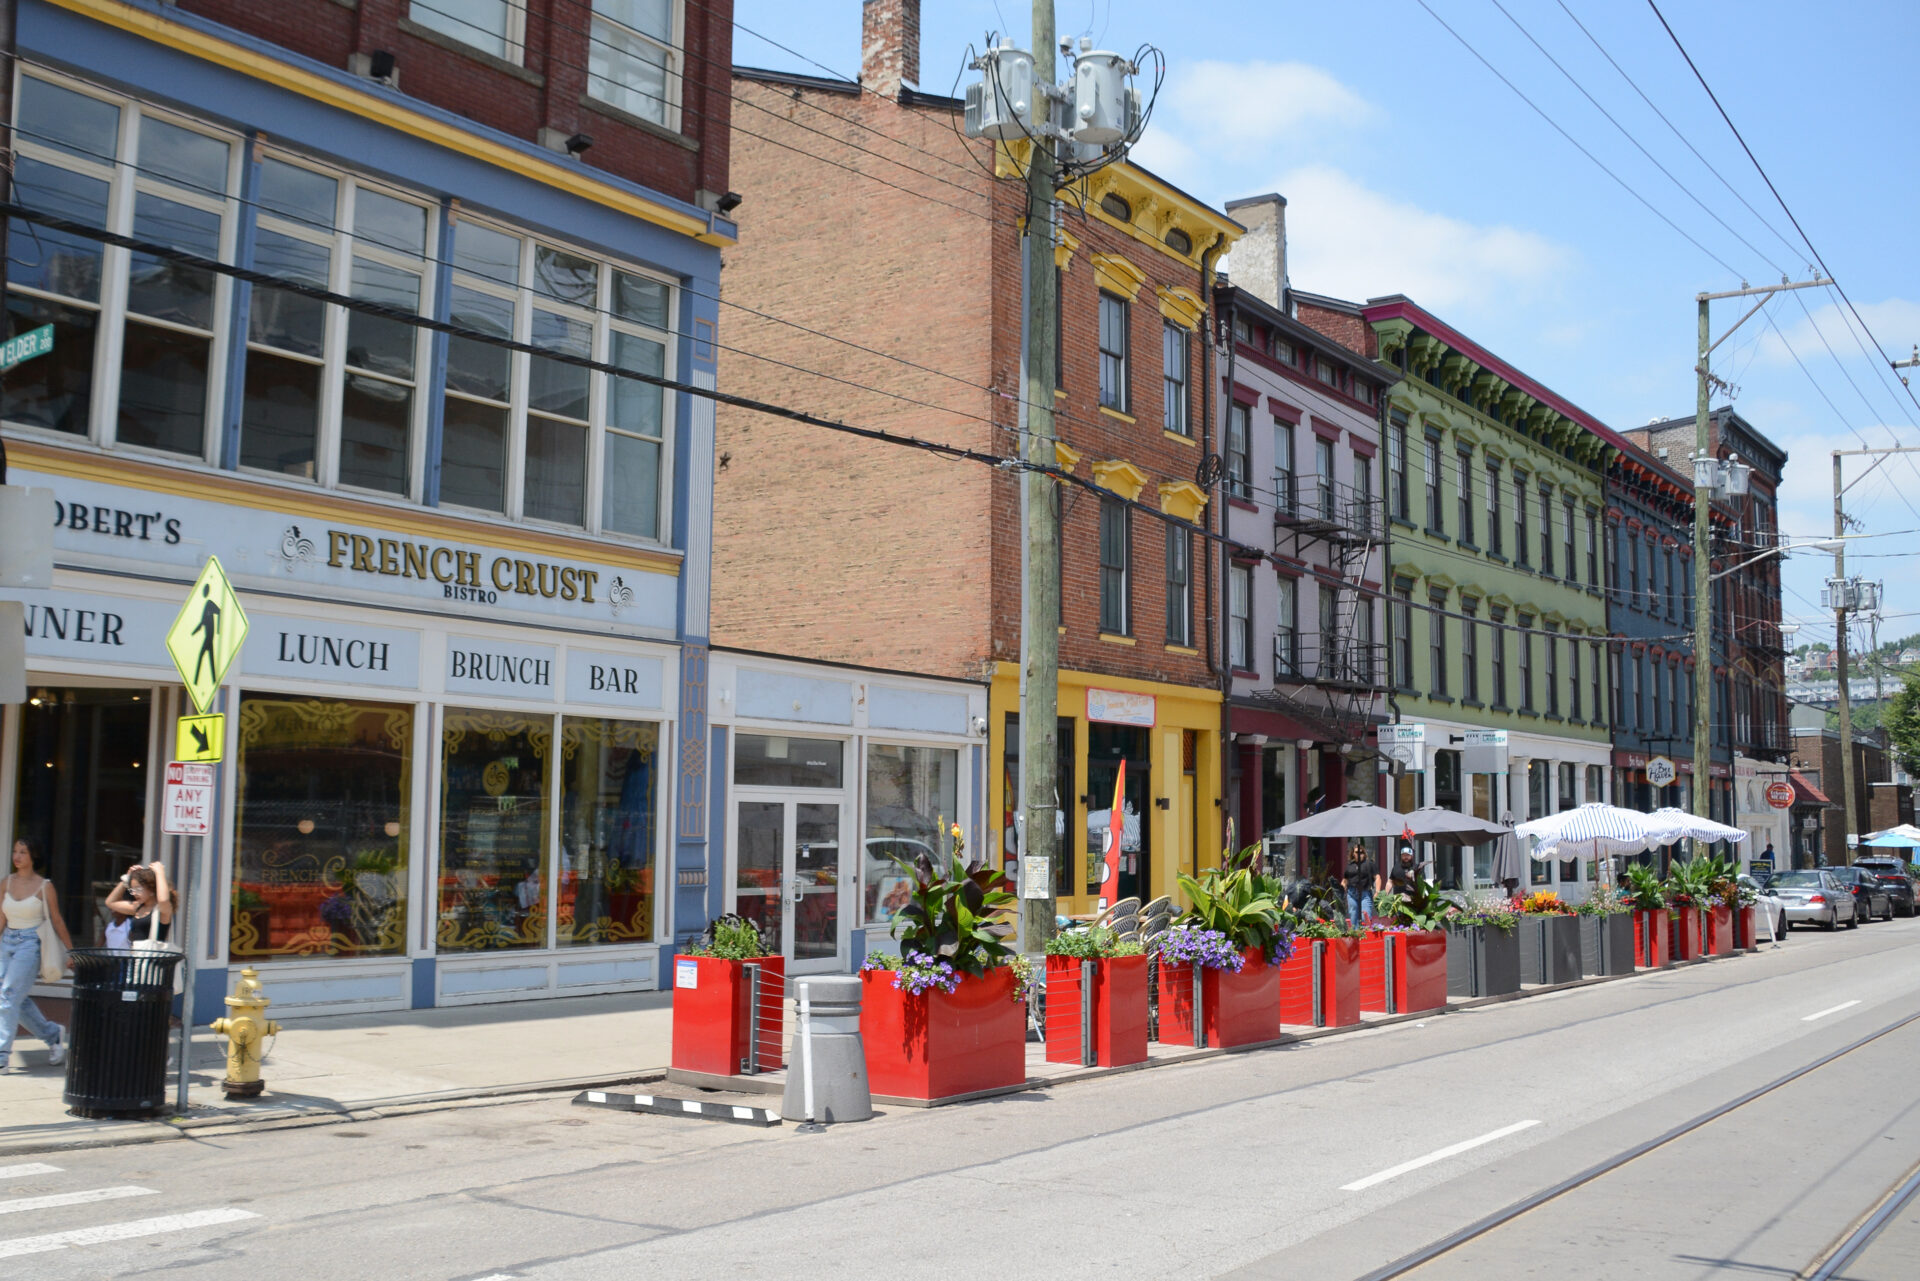 Farbenfrohe Straße am Findley Market in Cincinnati mit Häusern im Italianite Style